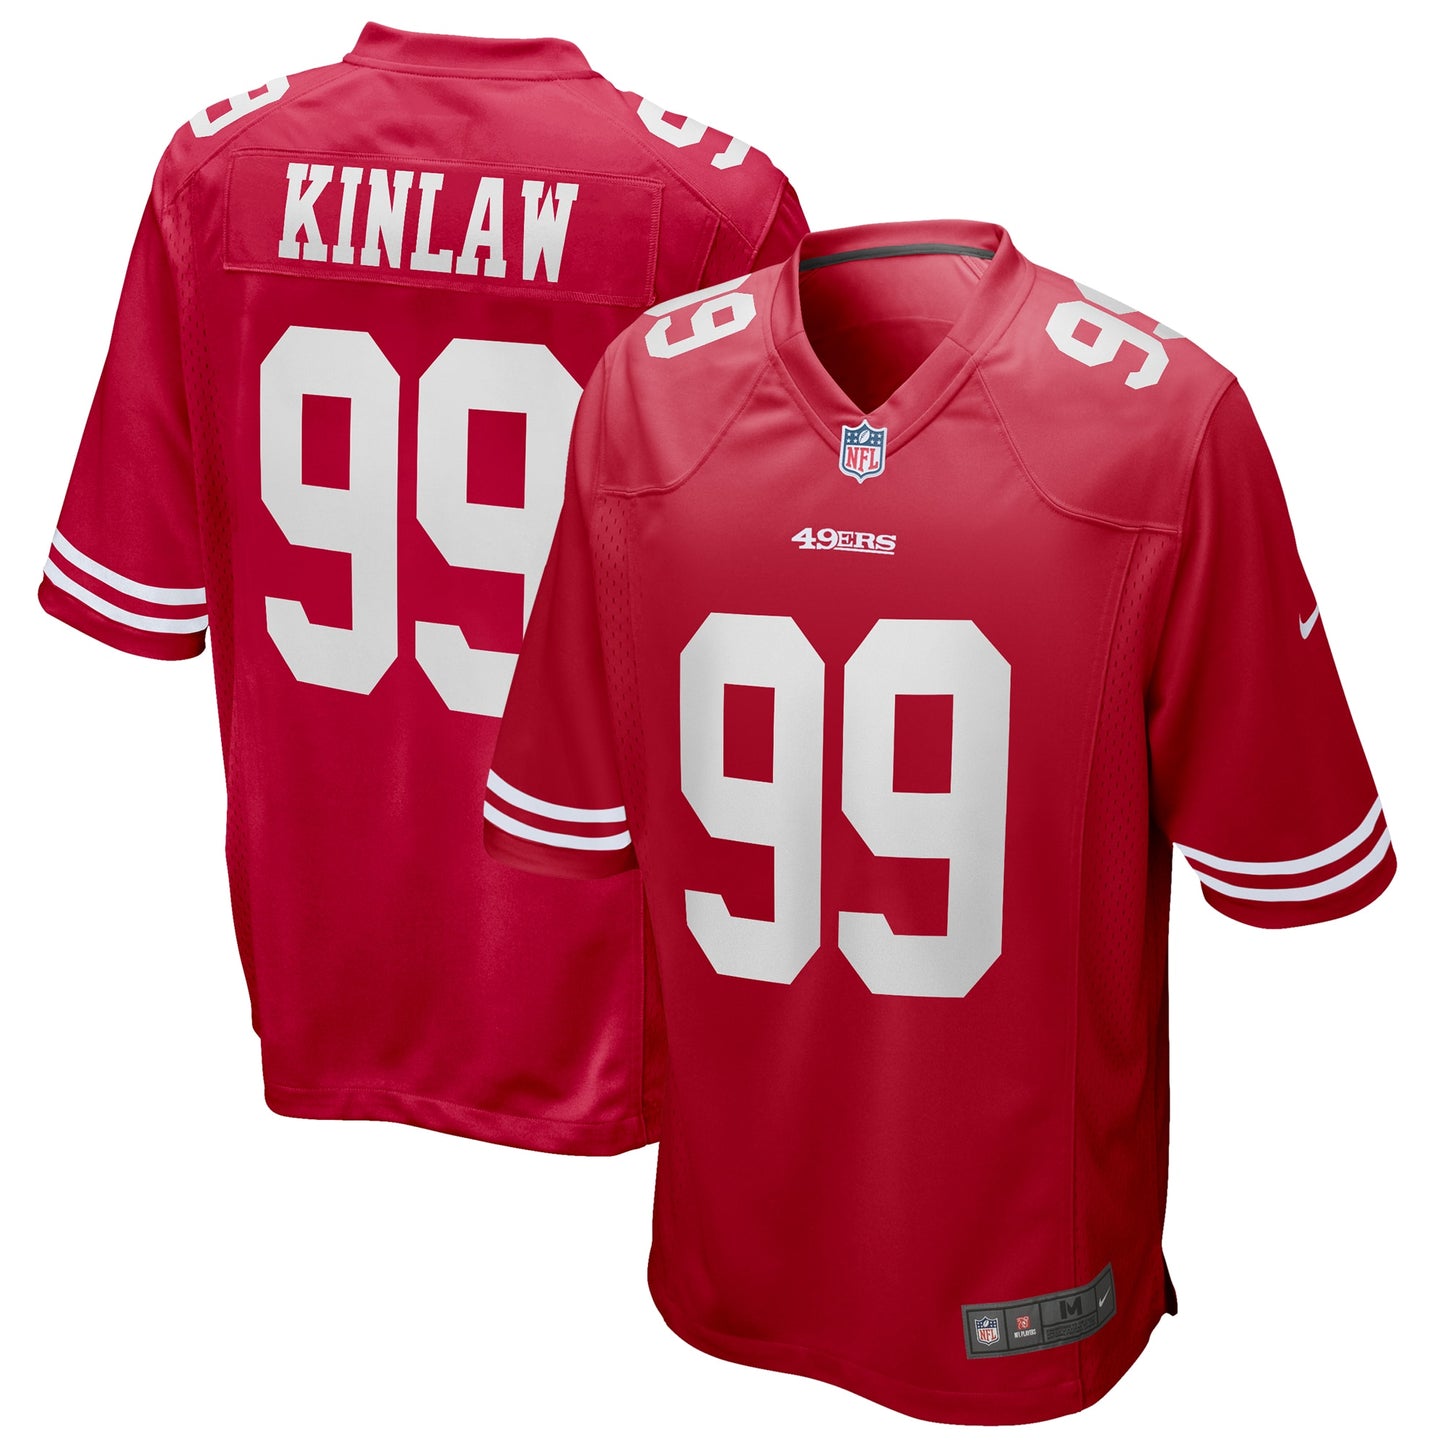 Javon Kinlaw San Francisco 49ers Nike Game Jersey - Scarlet